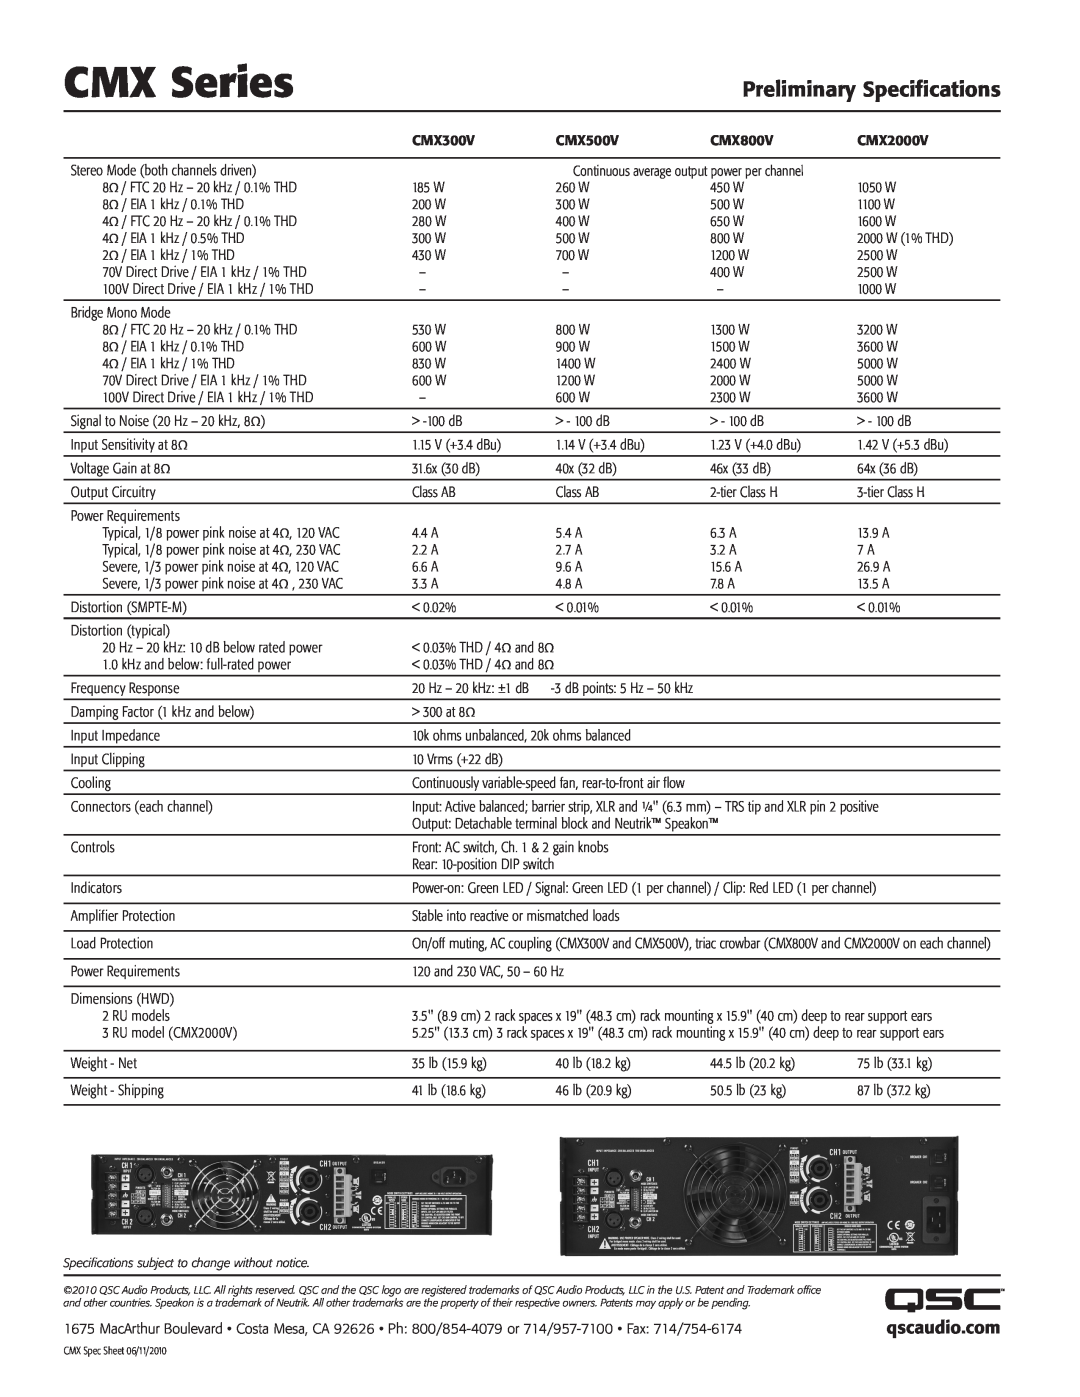 QSC Audio CMX500V, CMX800V, CMX300V manual qscaudio.com, CMX Series, Preliminary Specifications 